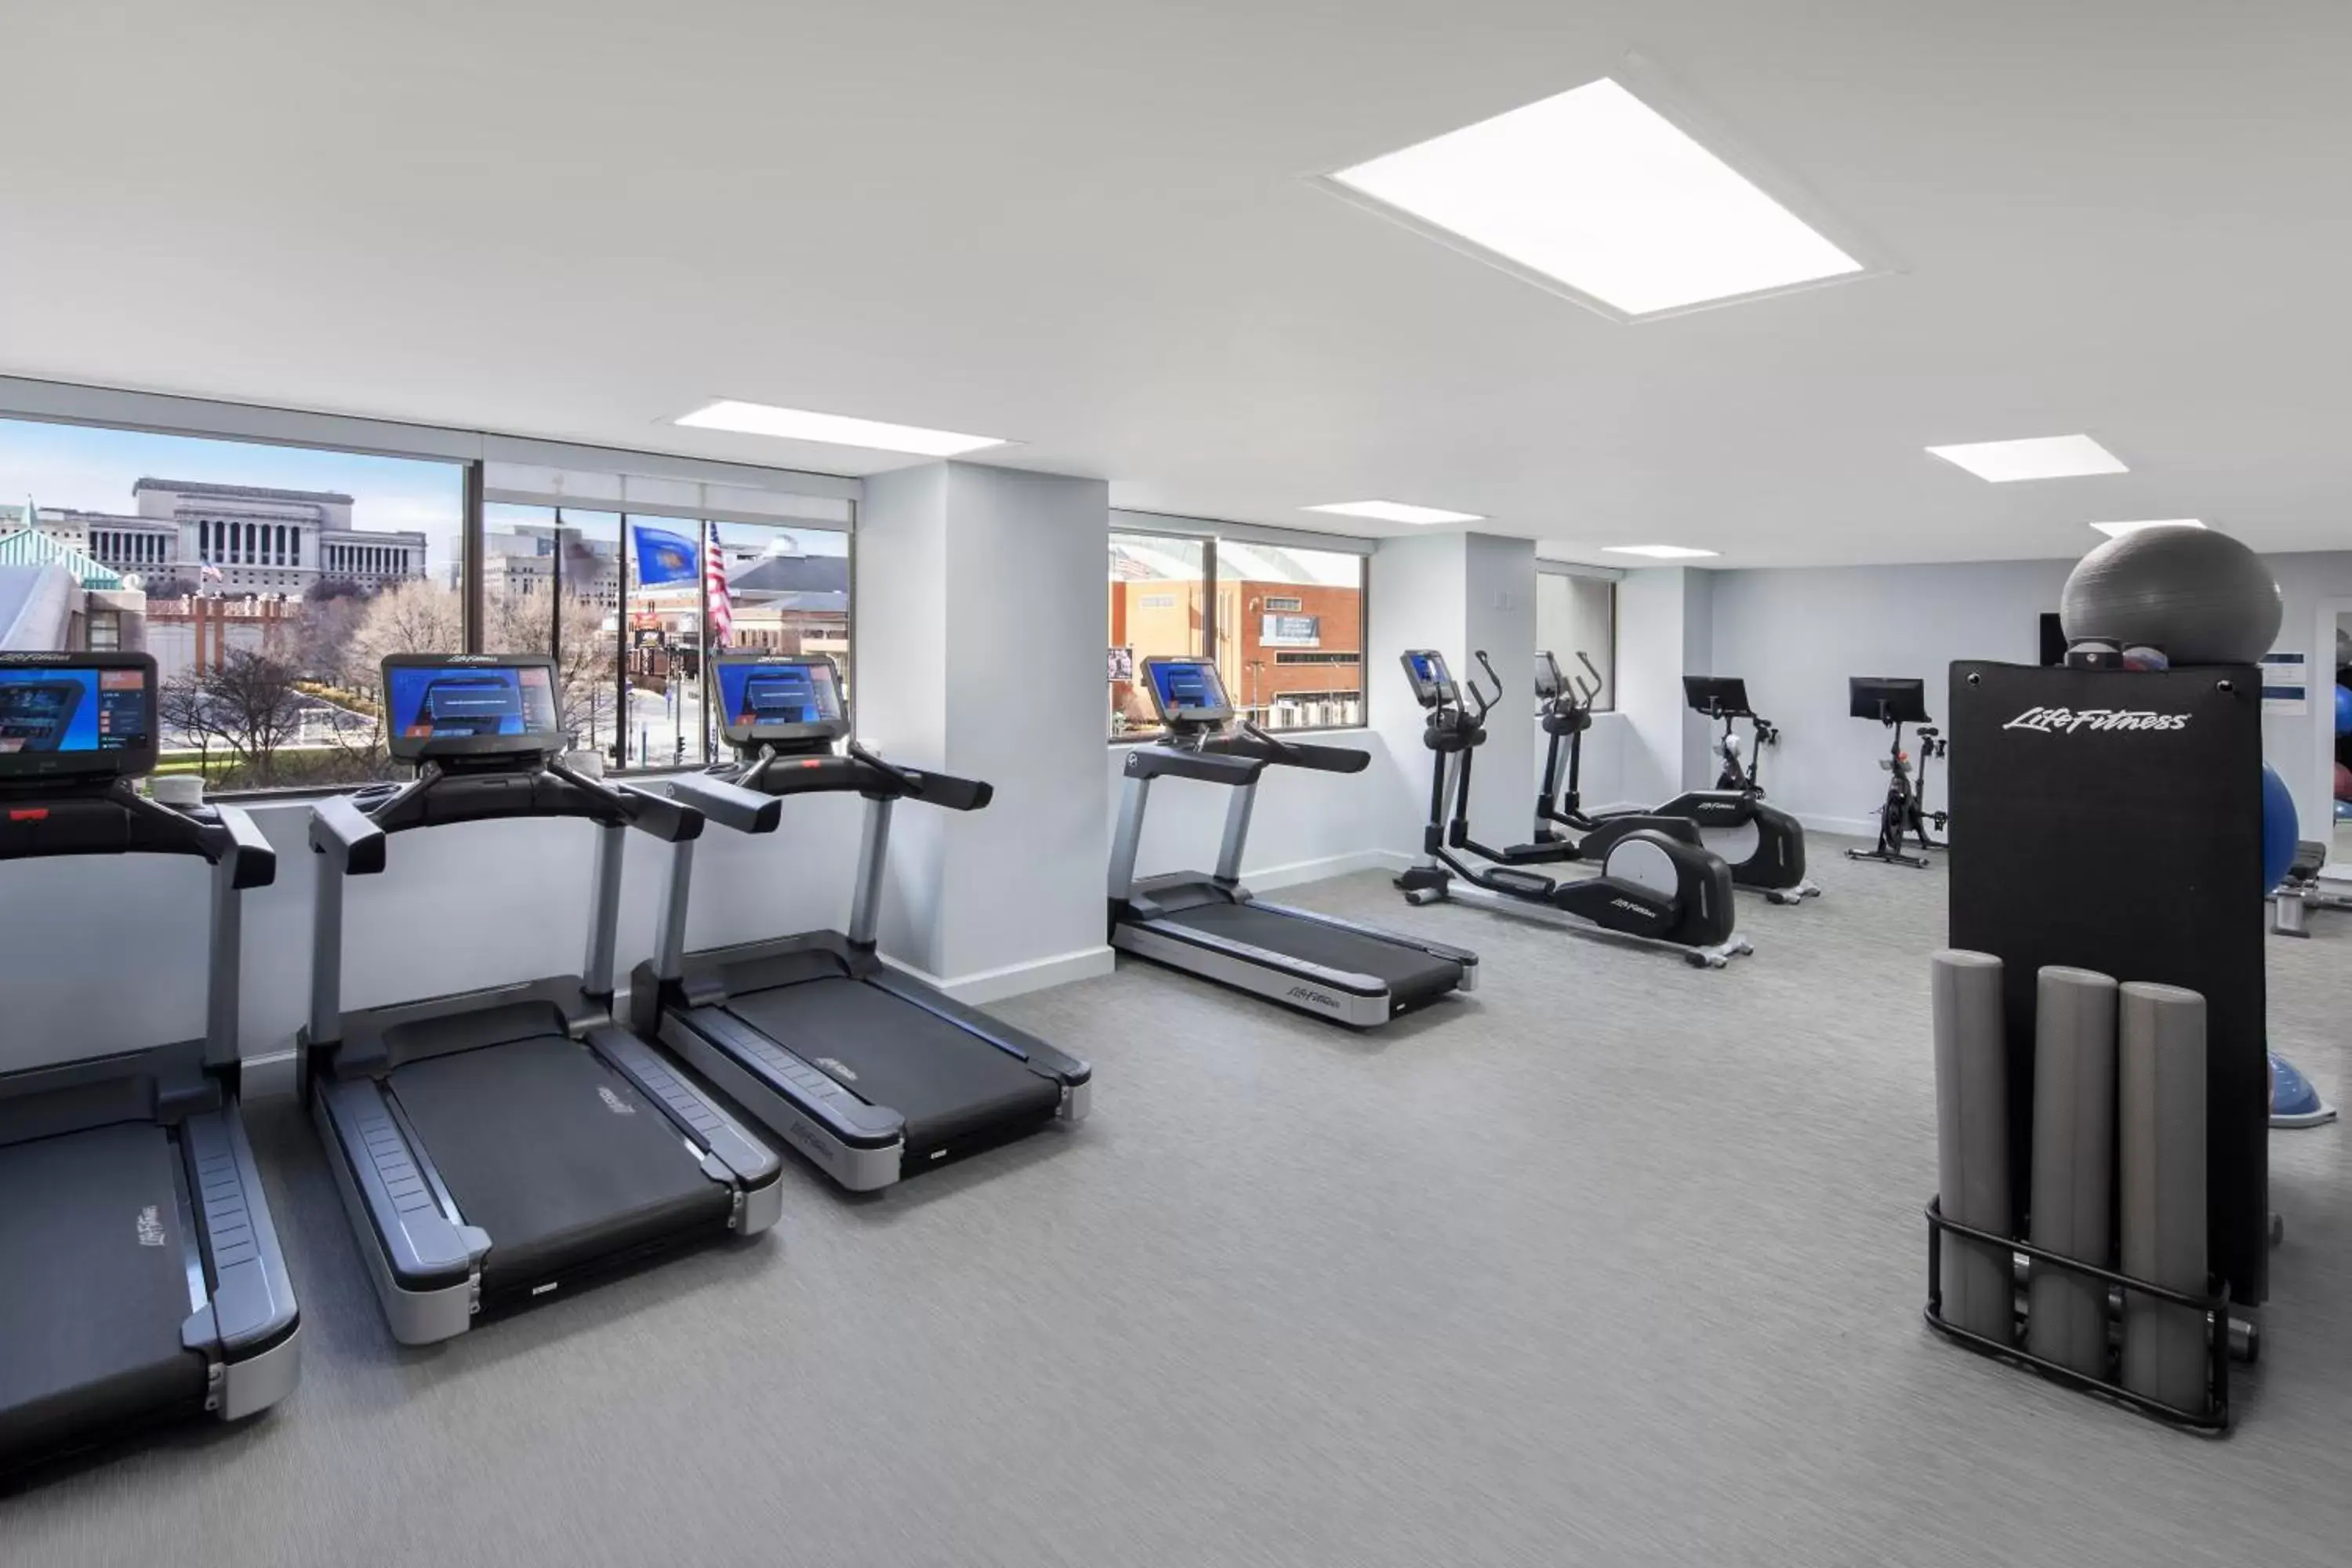 Fitness centre/facilities, Fitness Center/Facilities in Hyatt Regency Milwaukee